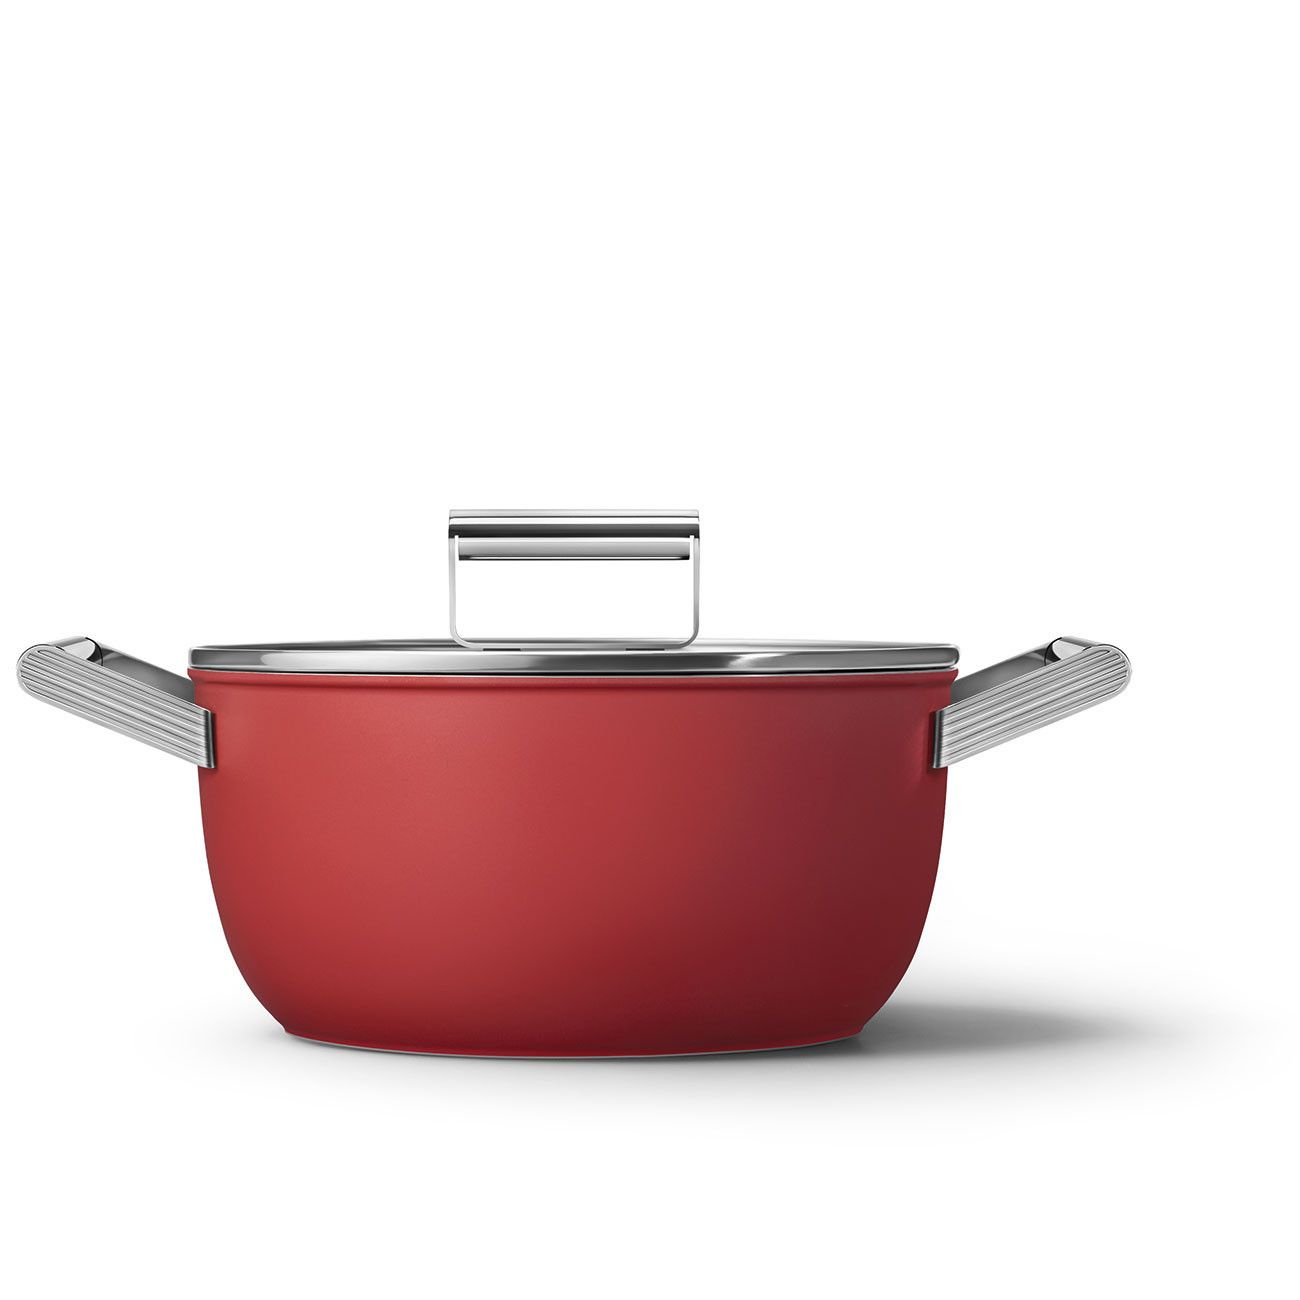 Smeg matte red saucepan set